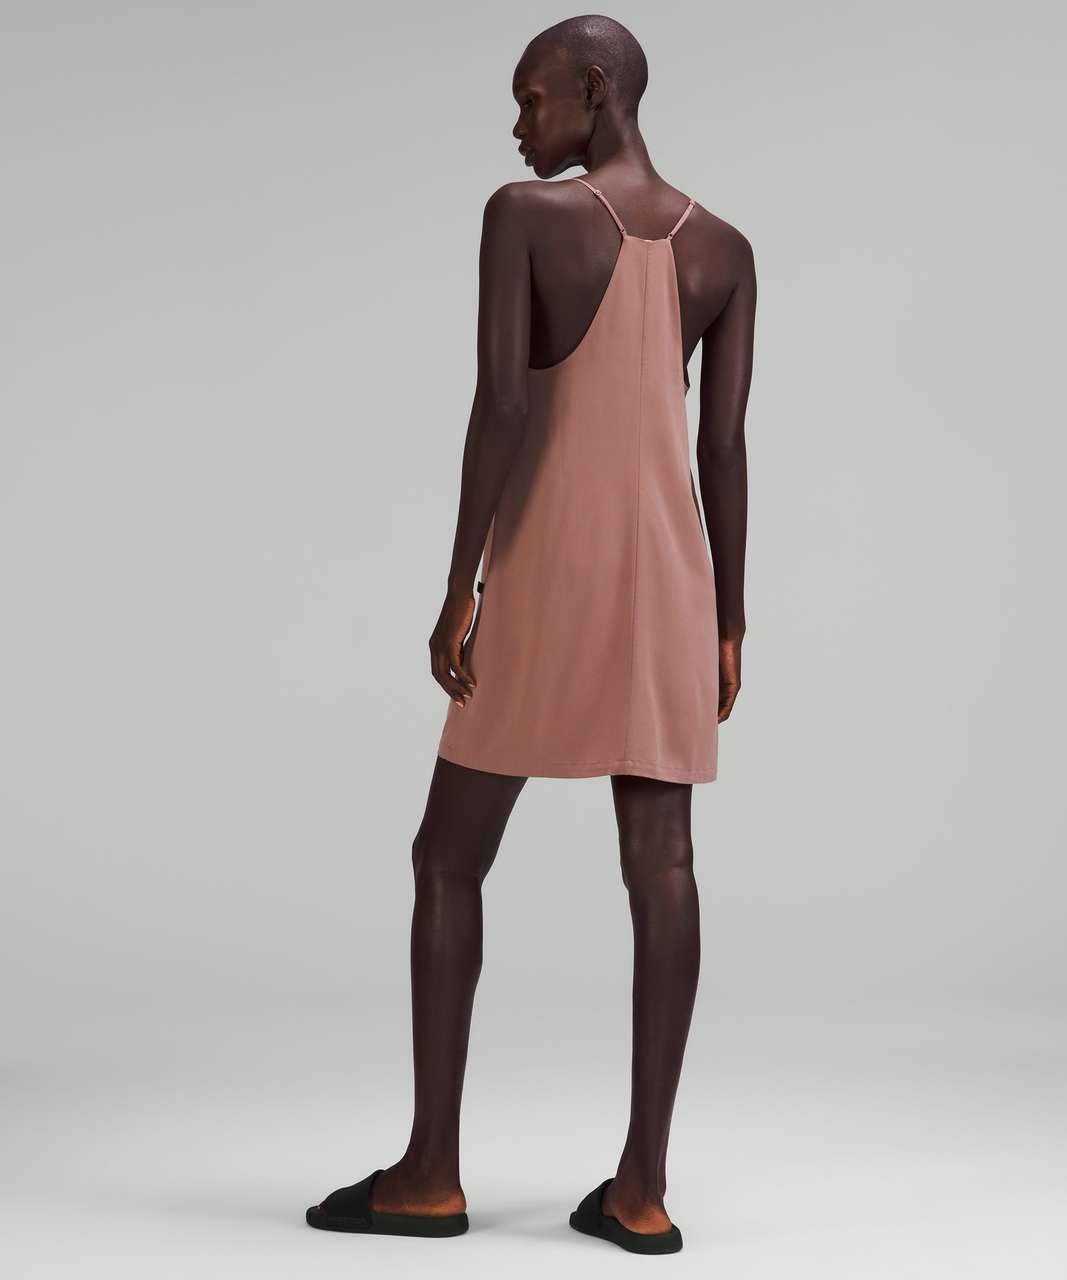 Lululemon lab Adjustable Thin Strap Dress - Twilight Mauve